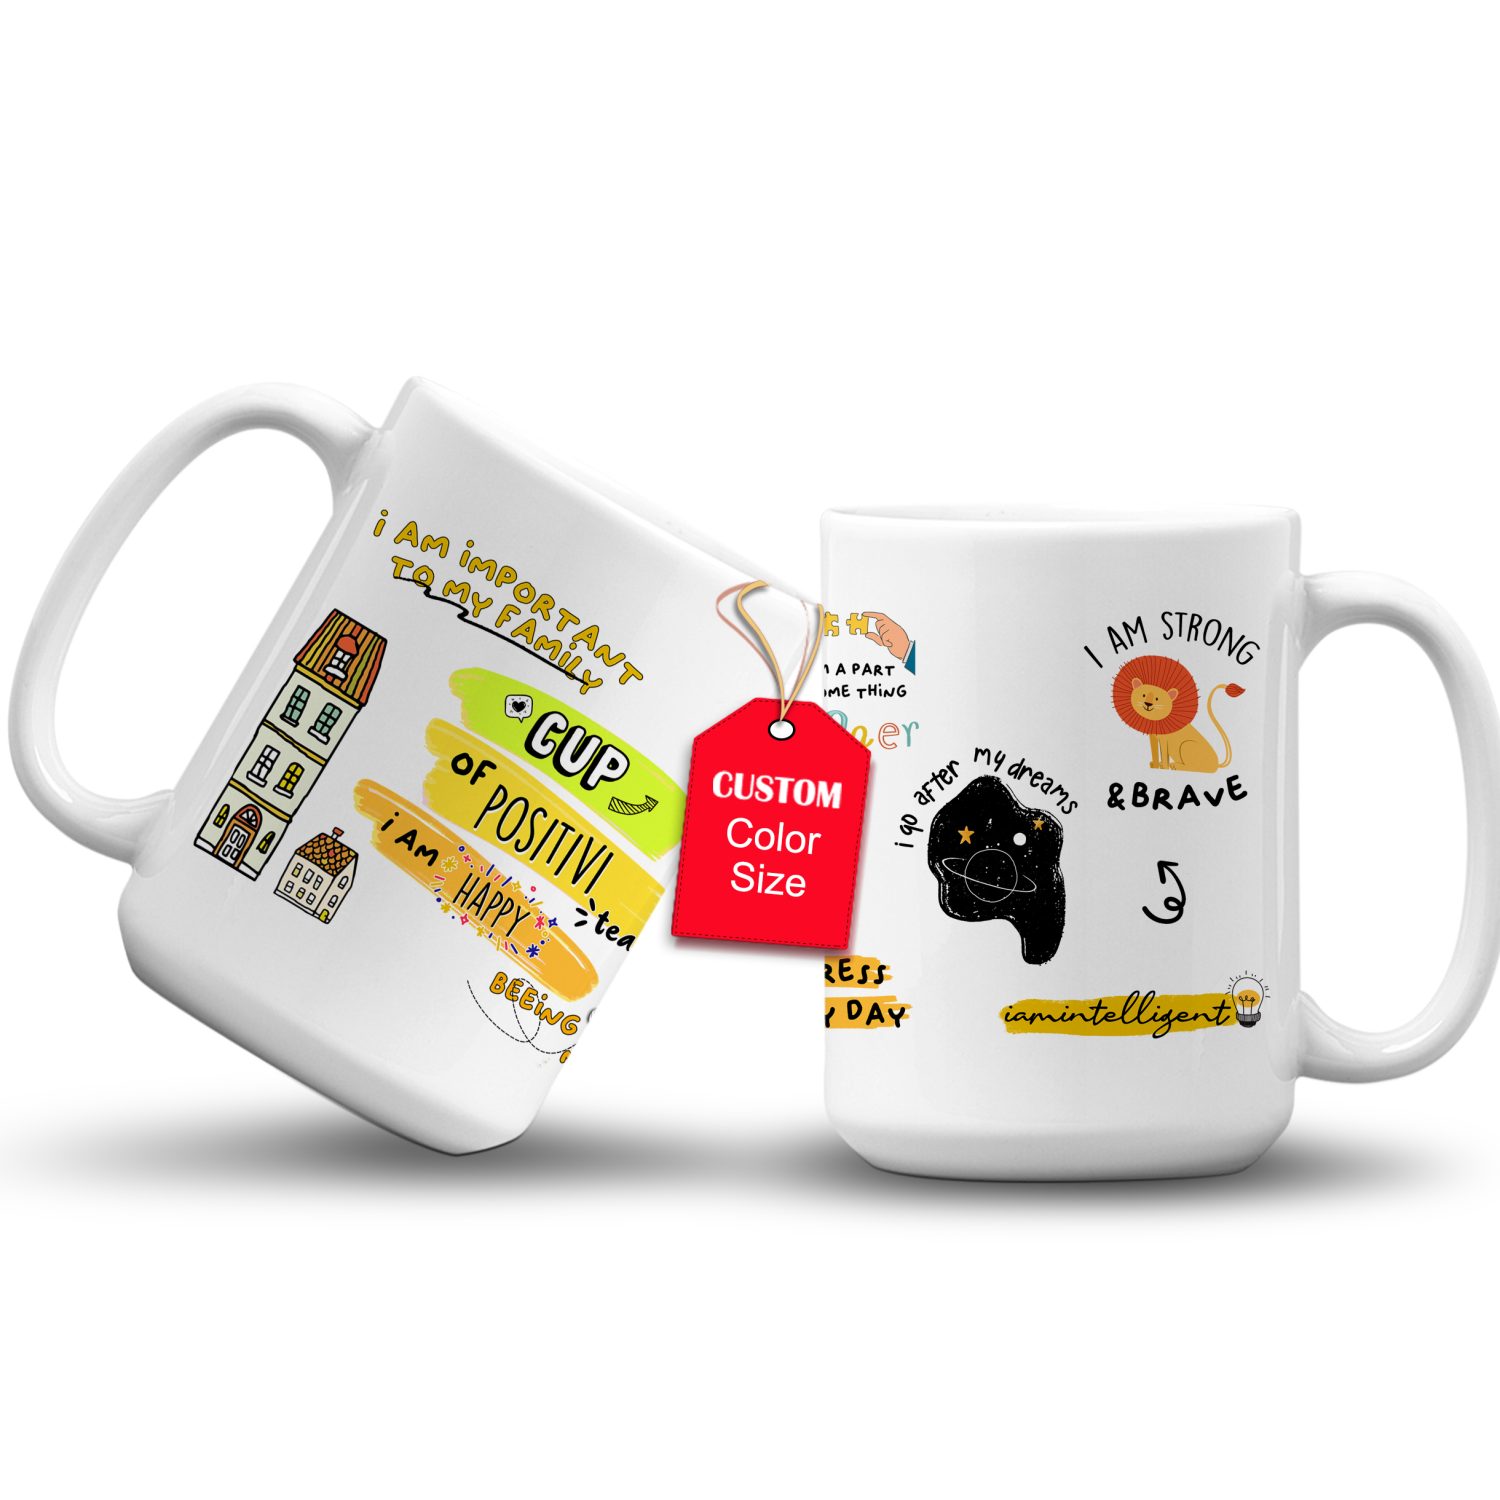 Cup of Positivi-tea Coffee Mug